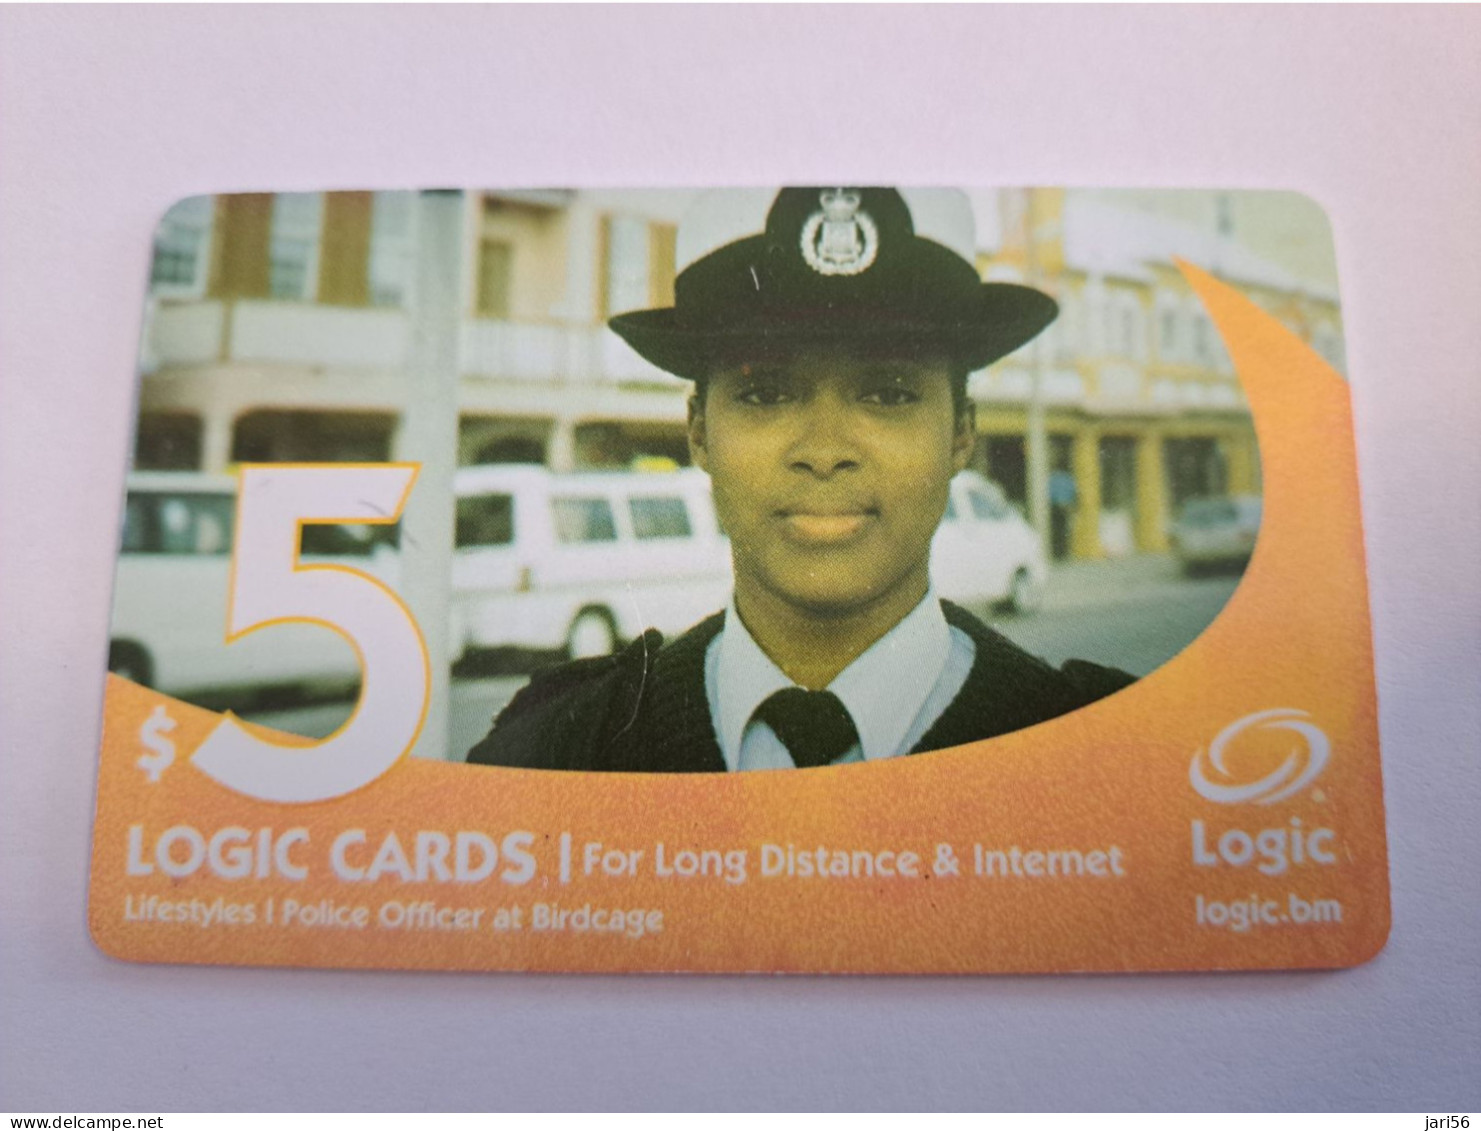 BERMUDA  $ 5,-  LOGIC/  POLICE LADY   IN BERMUDA / DATE 4 /2005 / 9700 EX   PREPAID CARD  Fine USED  **16193** - Bermudas